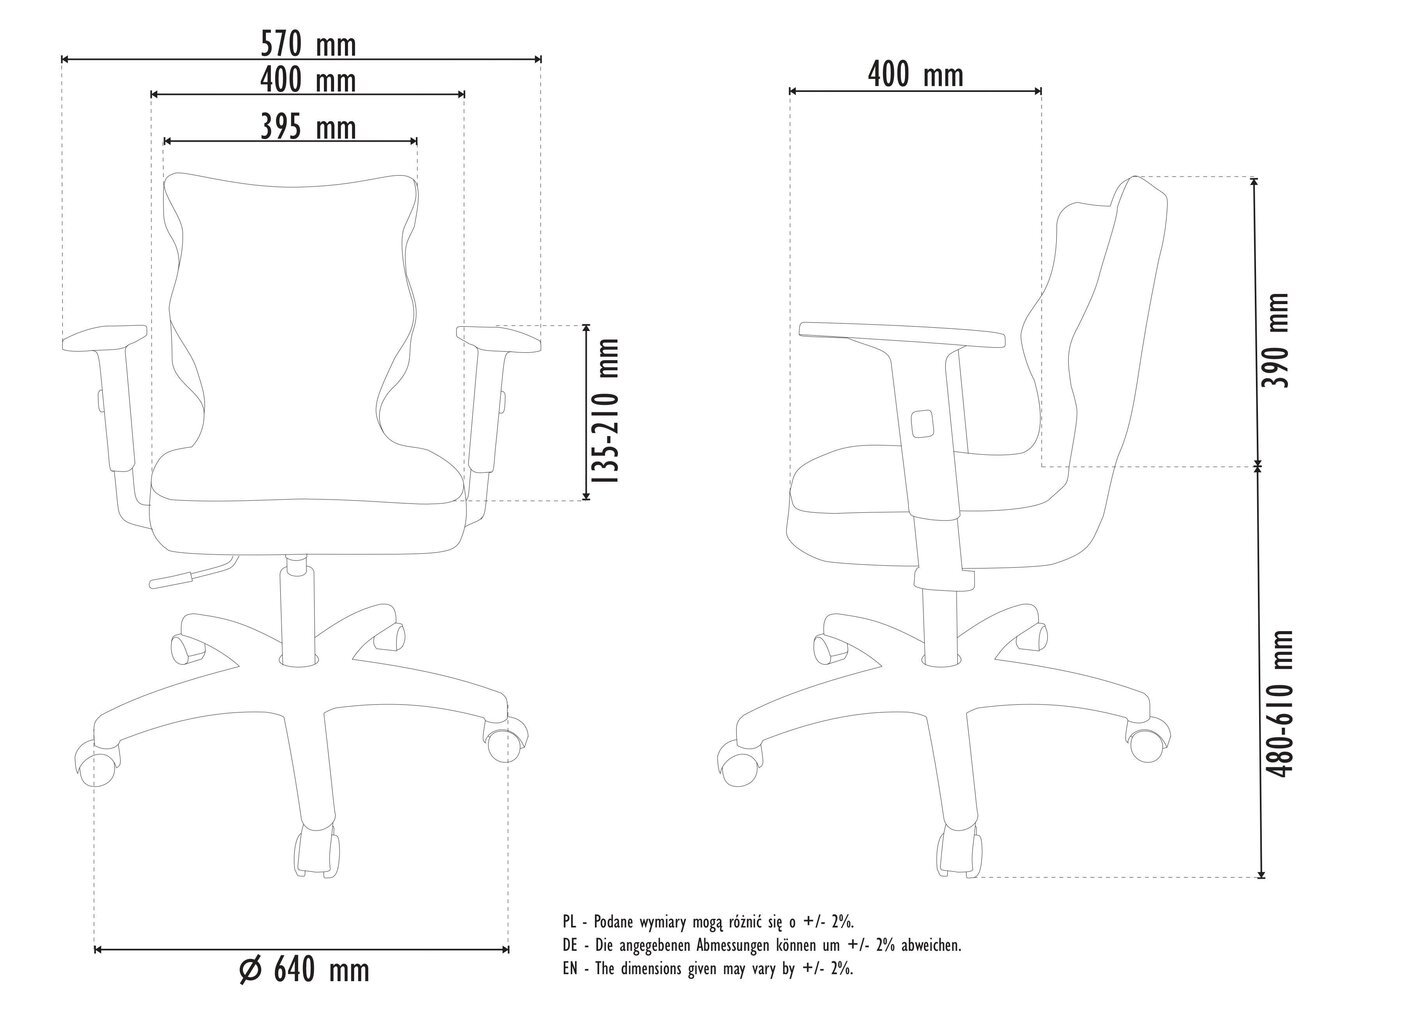 Biuro kėdė Entelo Good Chair Duo VS01 5, balta/juoda kaina ir informacija | Biuro kėdės | pigu.lt